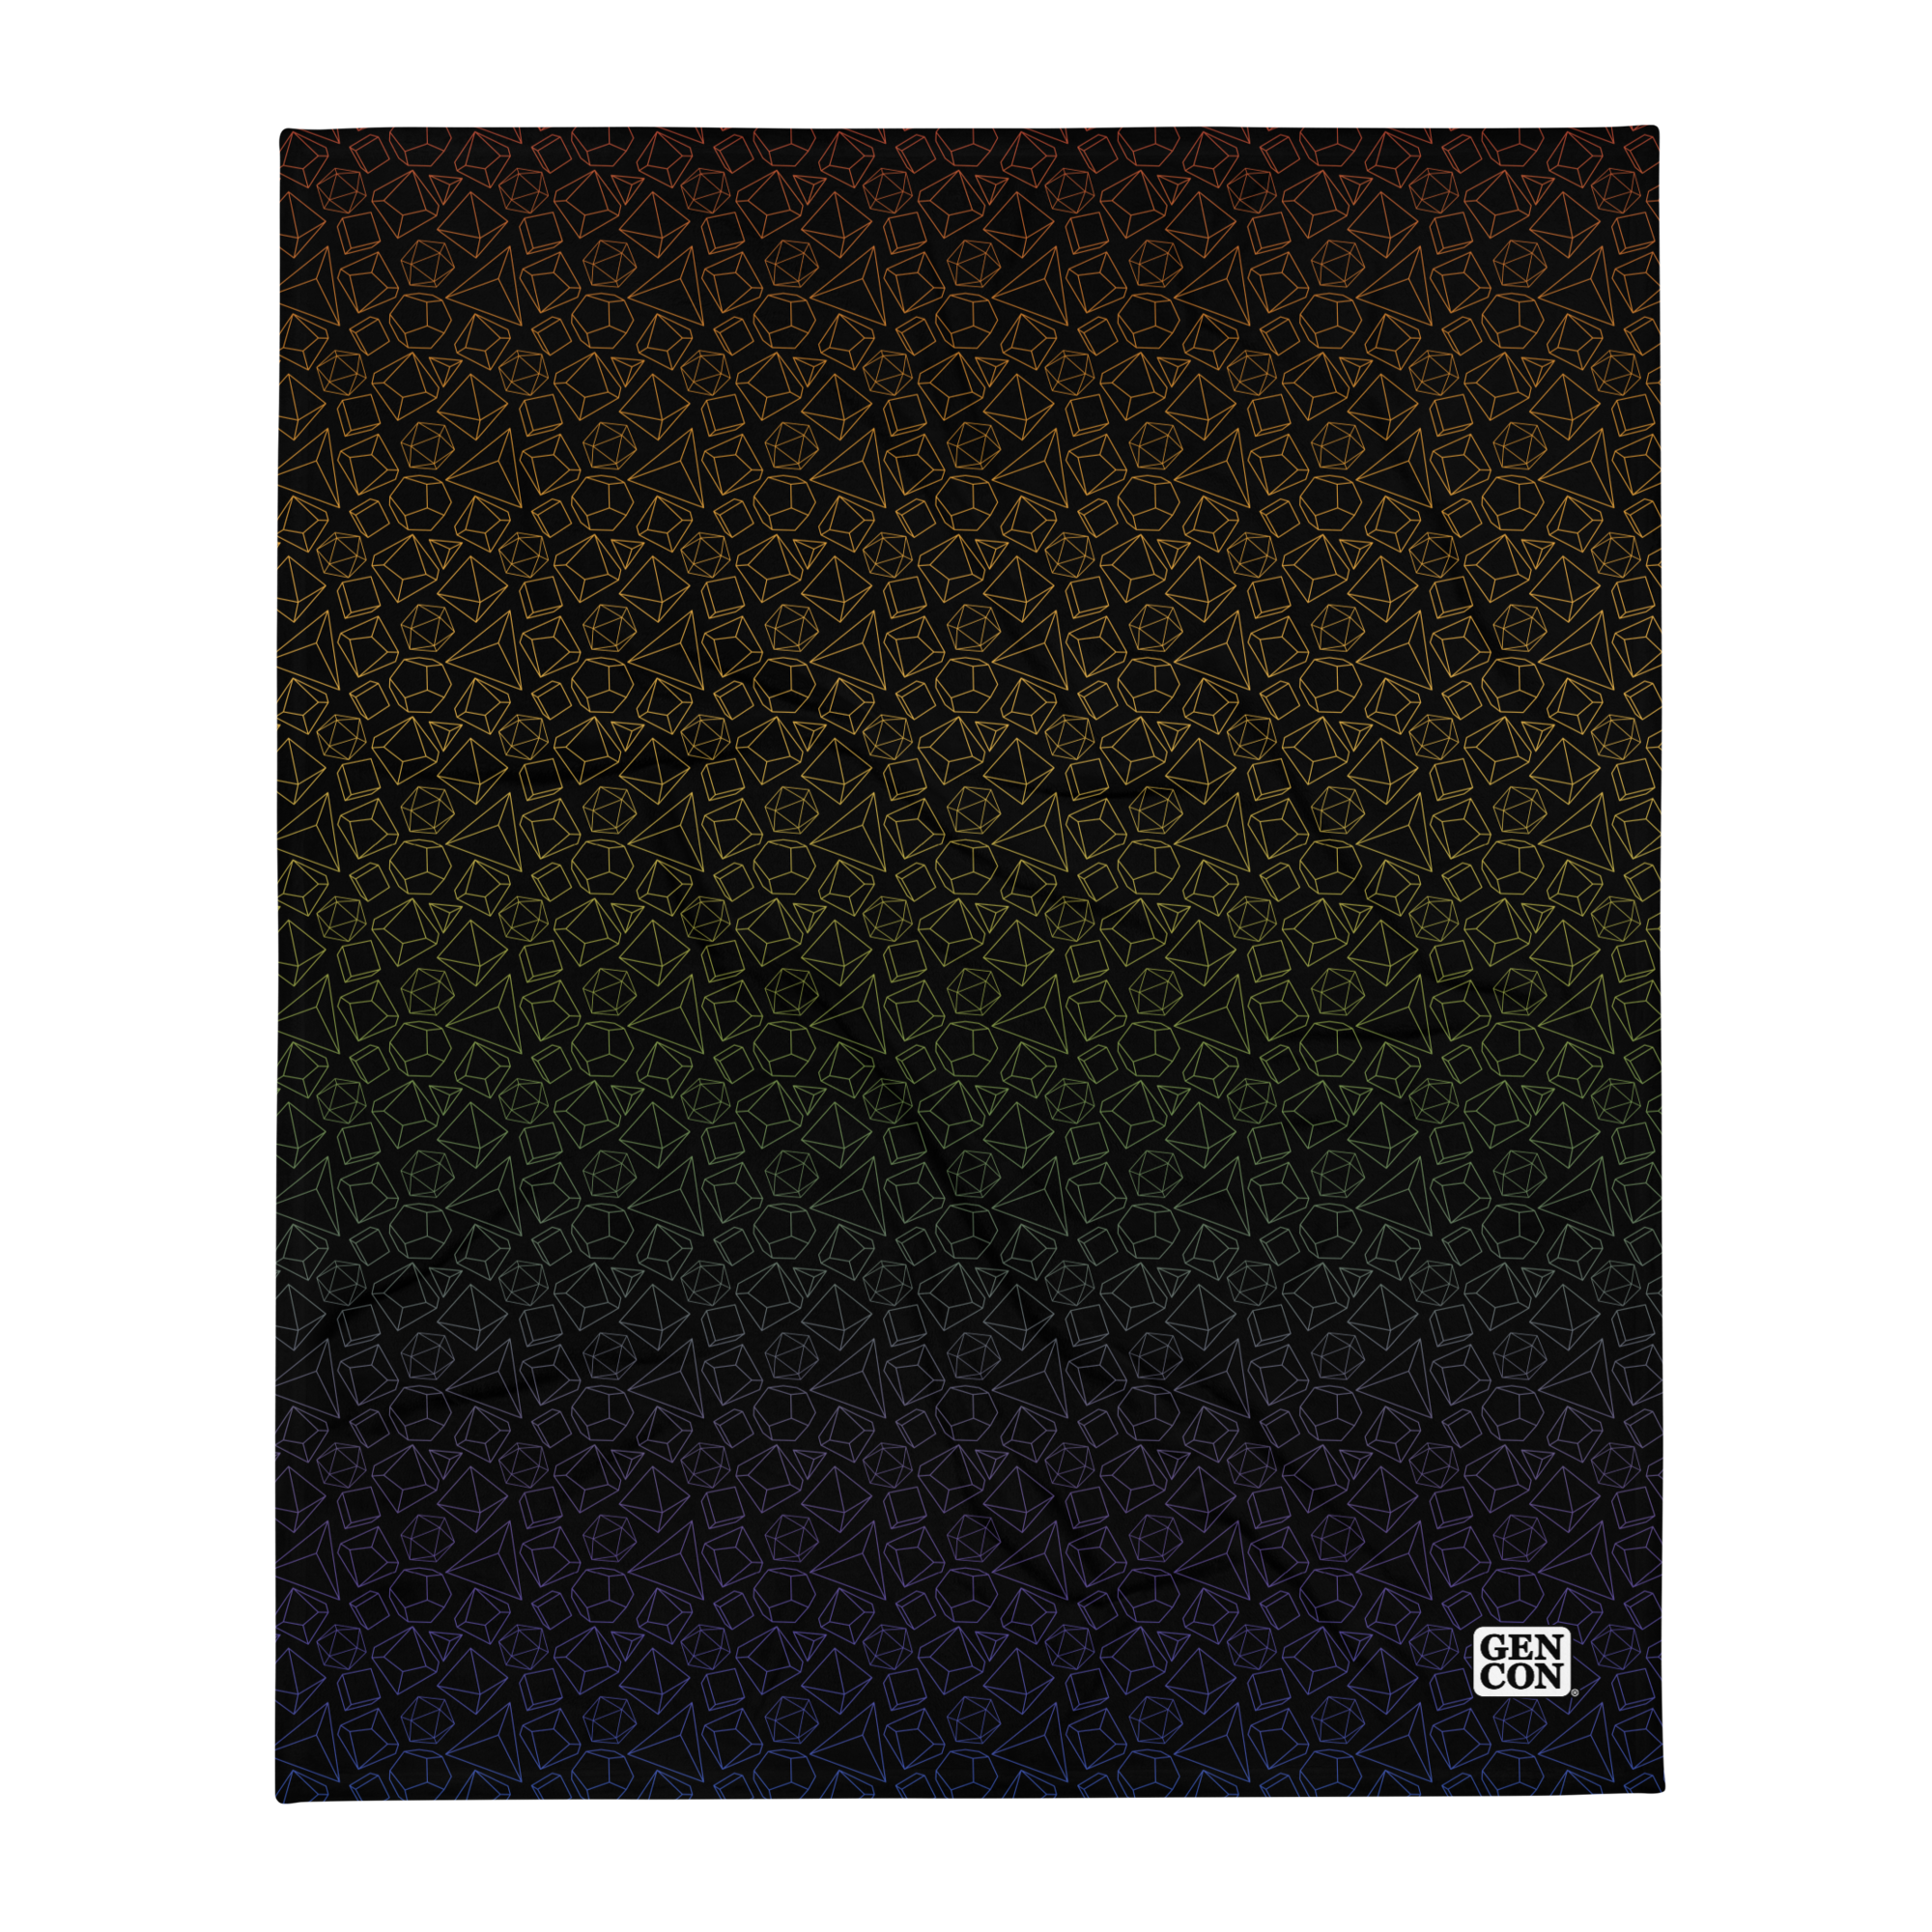 Gen Con Rainbow Dice Pattern Blanket | Rollacrit